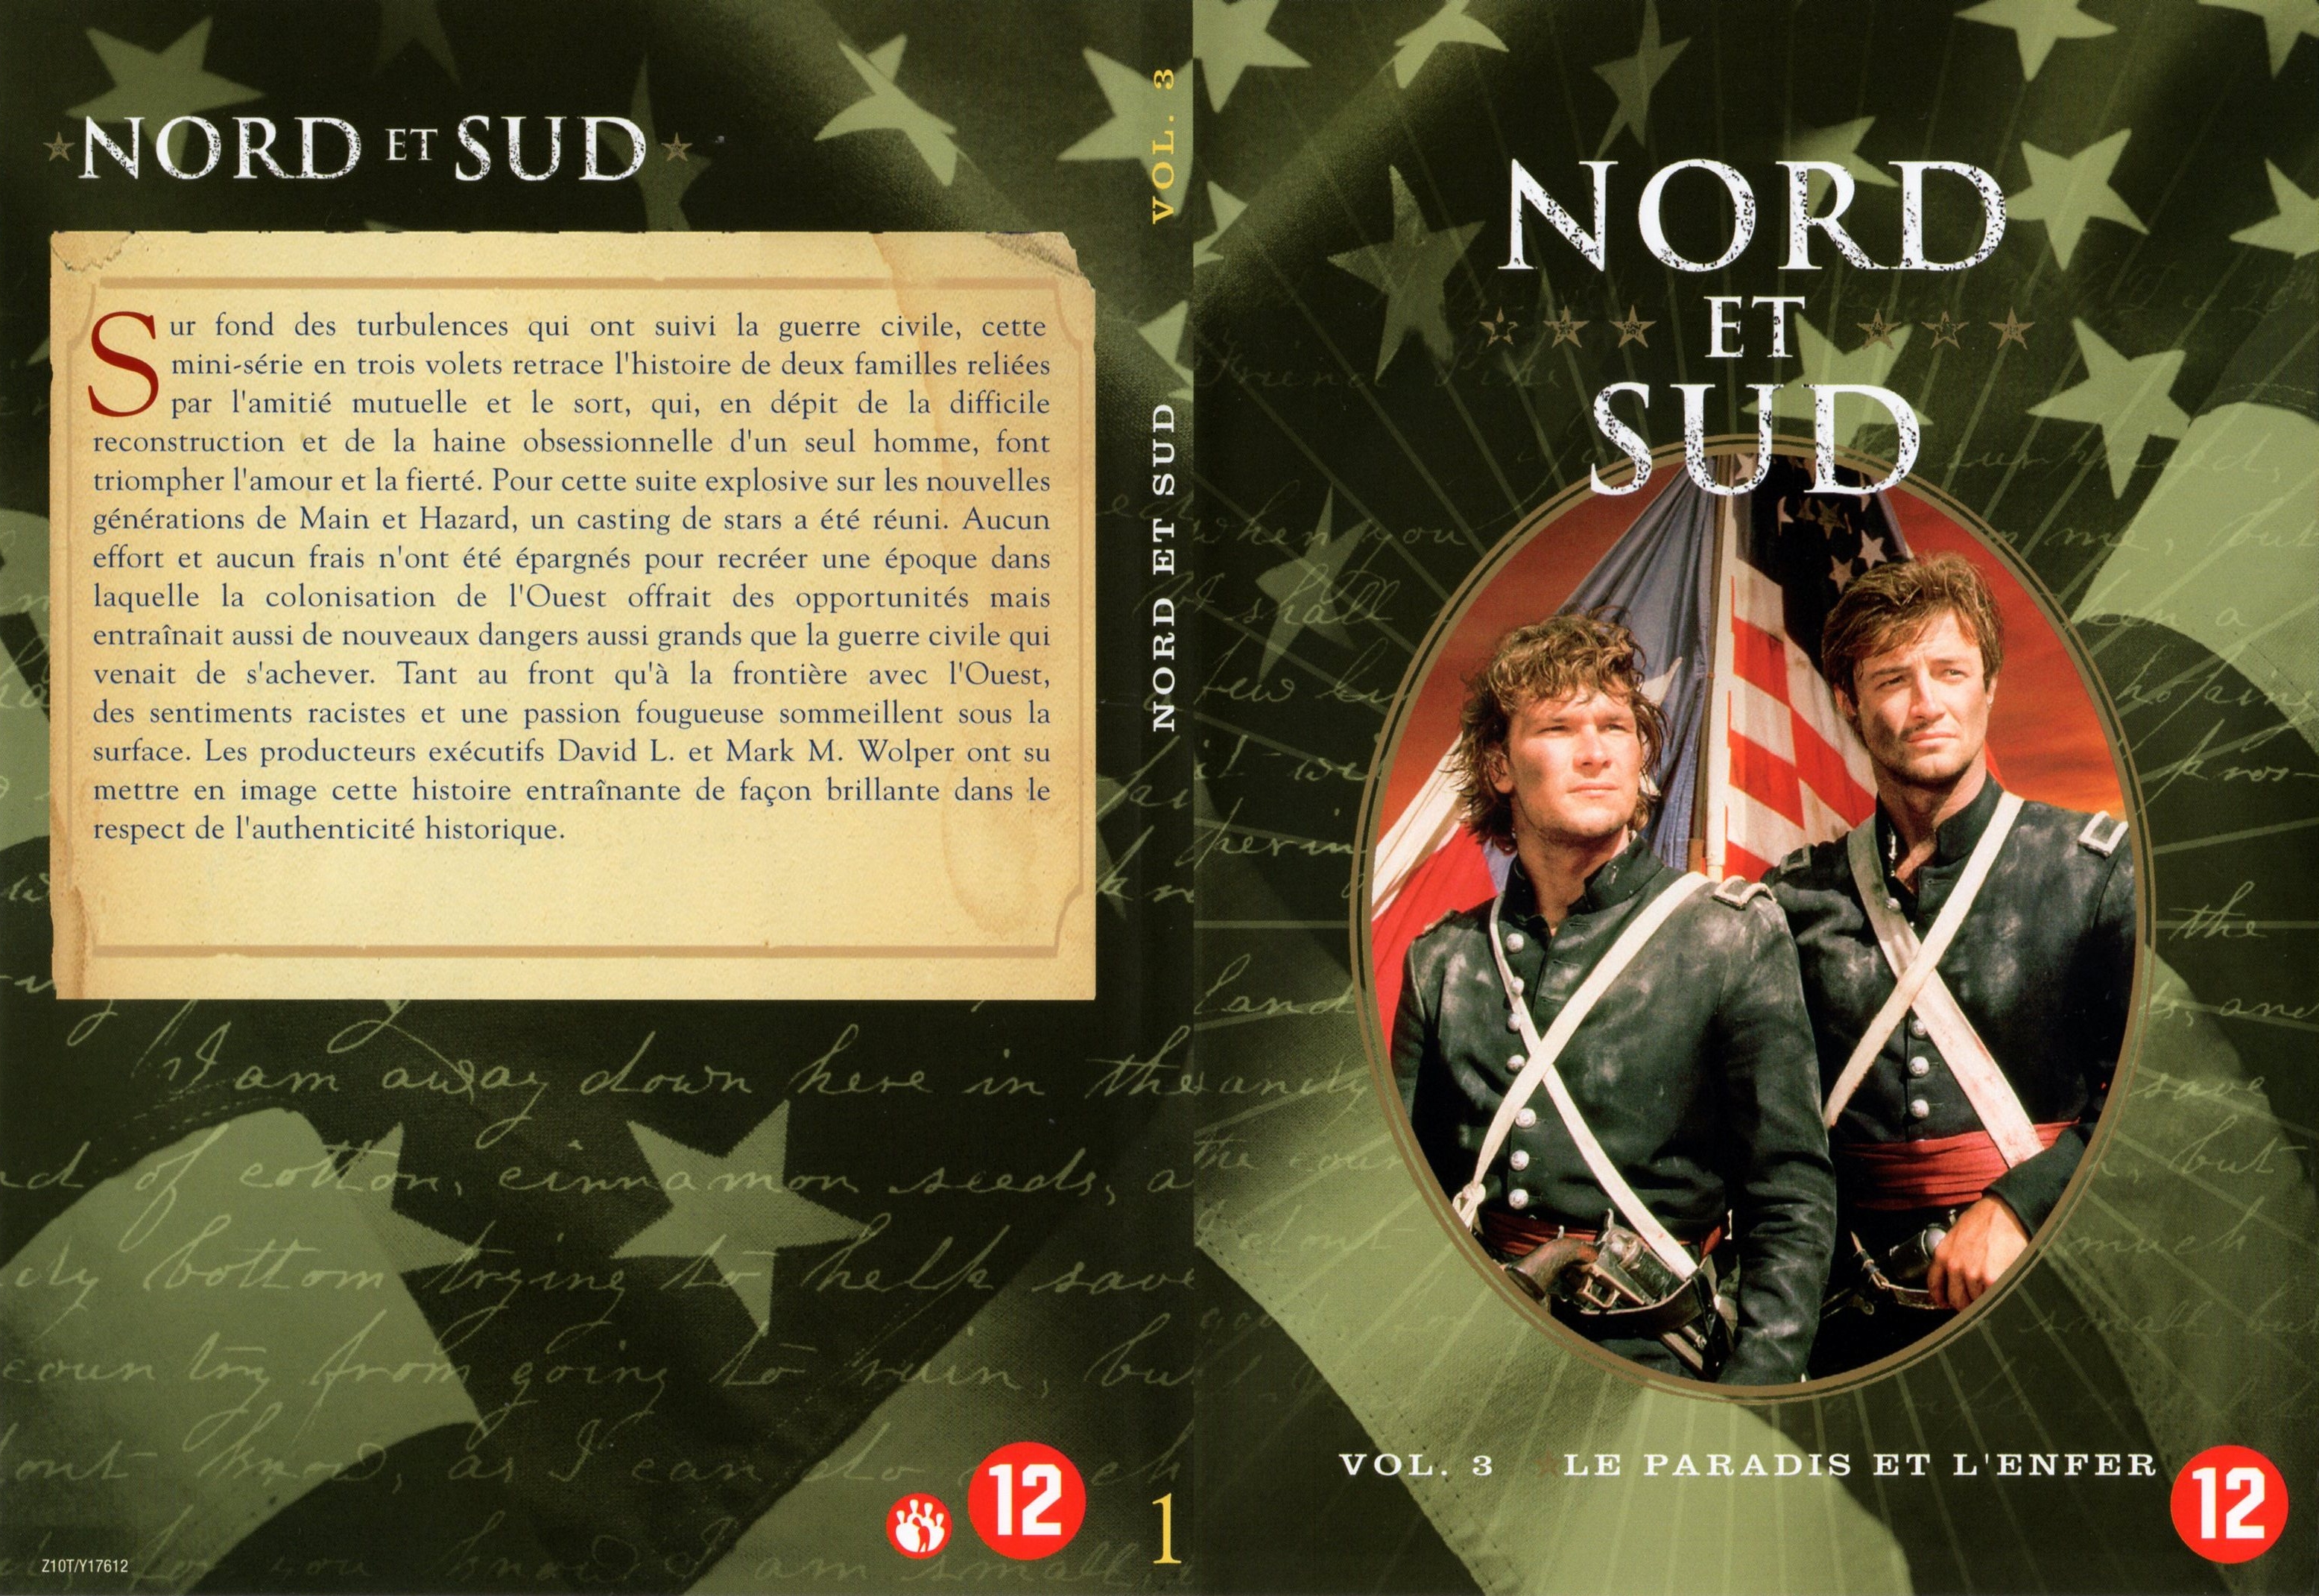 Jaquette DVD Nord et sud vol 3 dvd 1